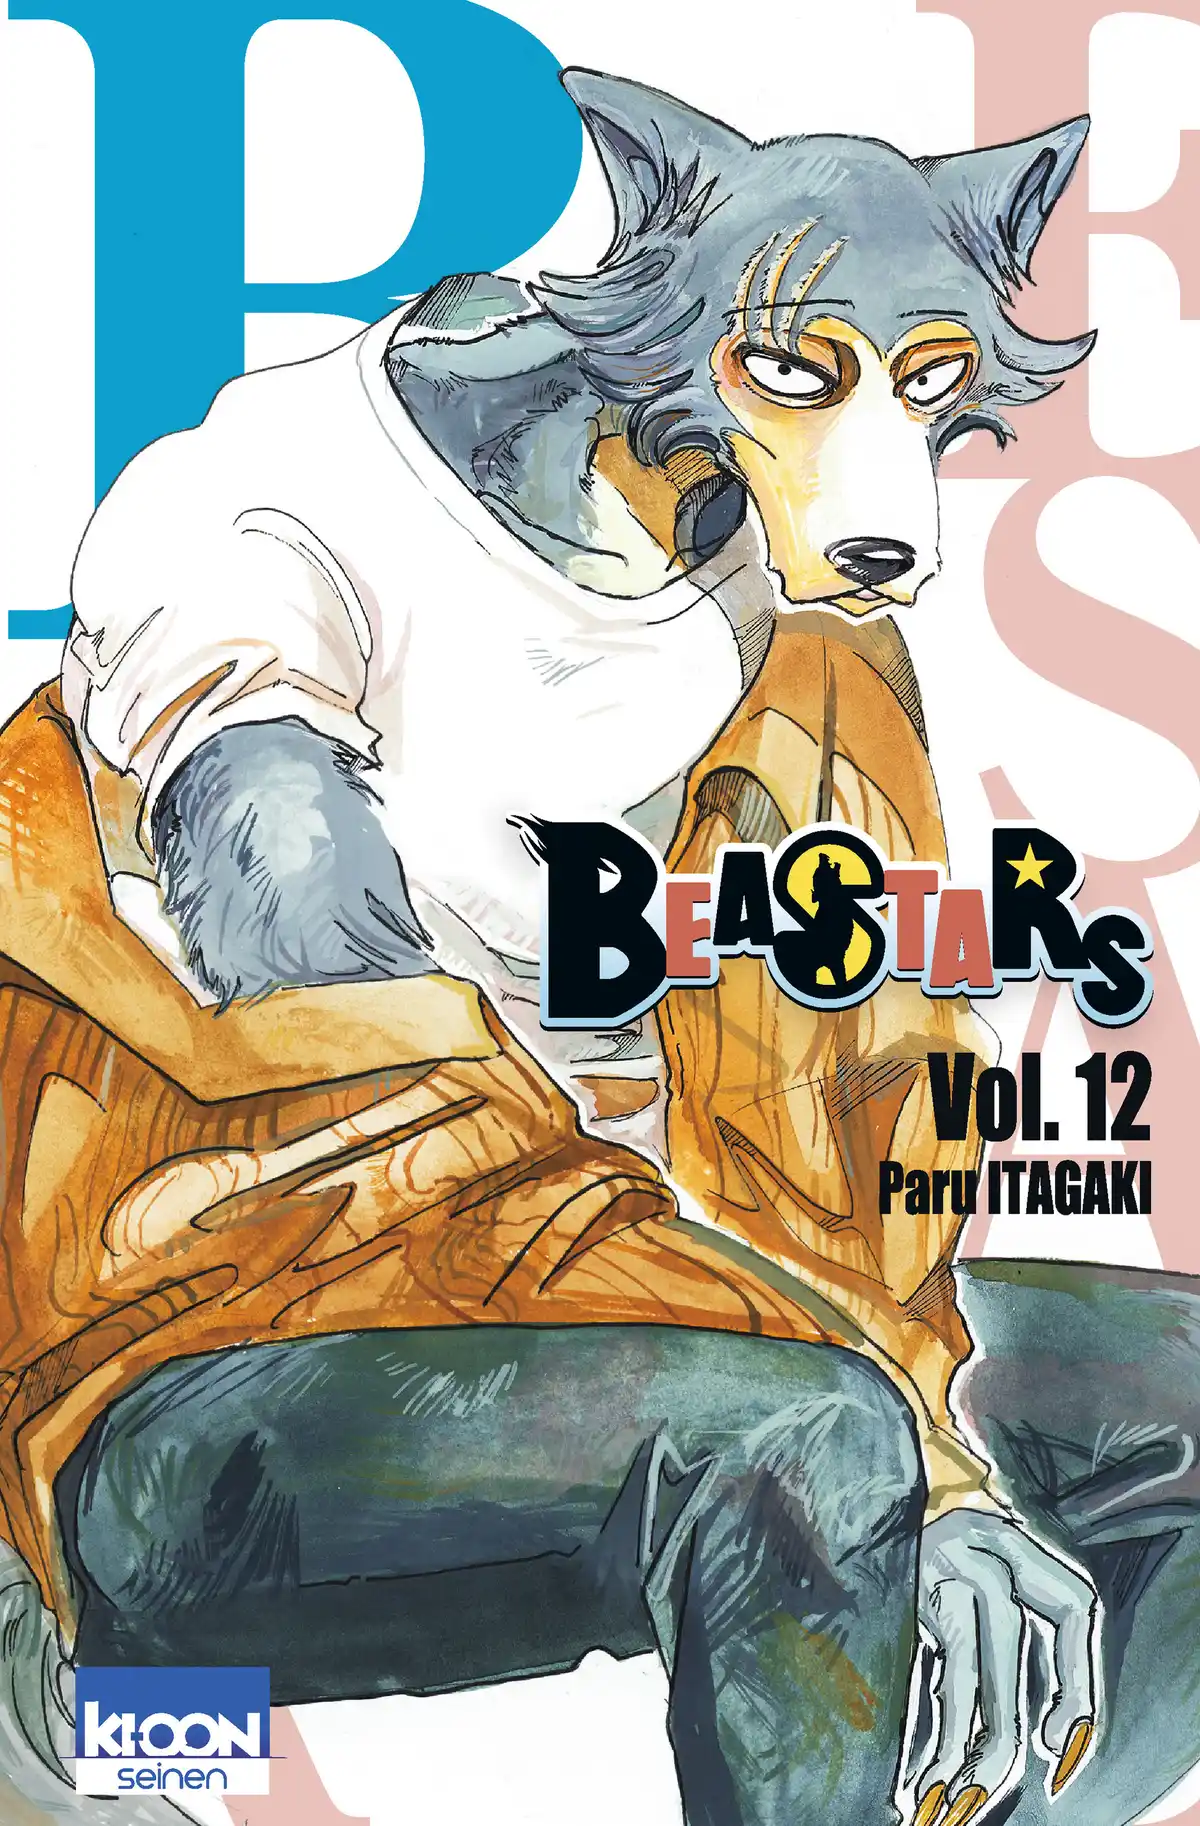 BEASTARS Volume 12 page 1